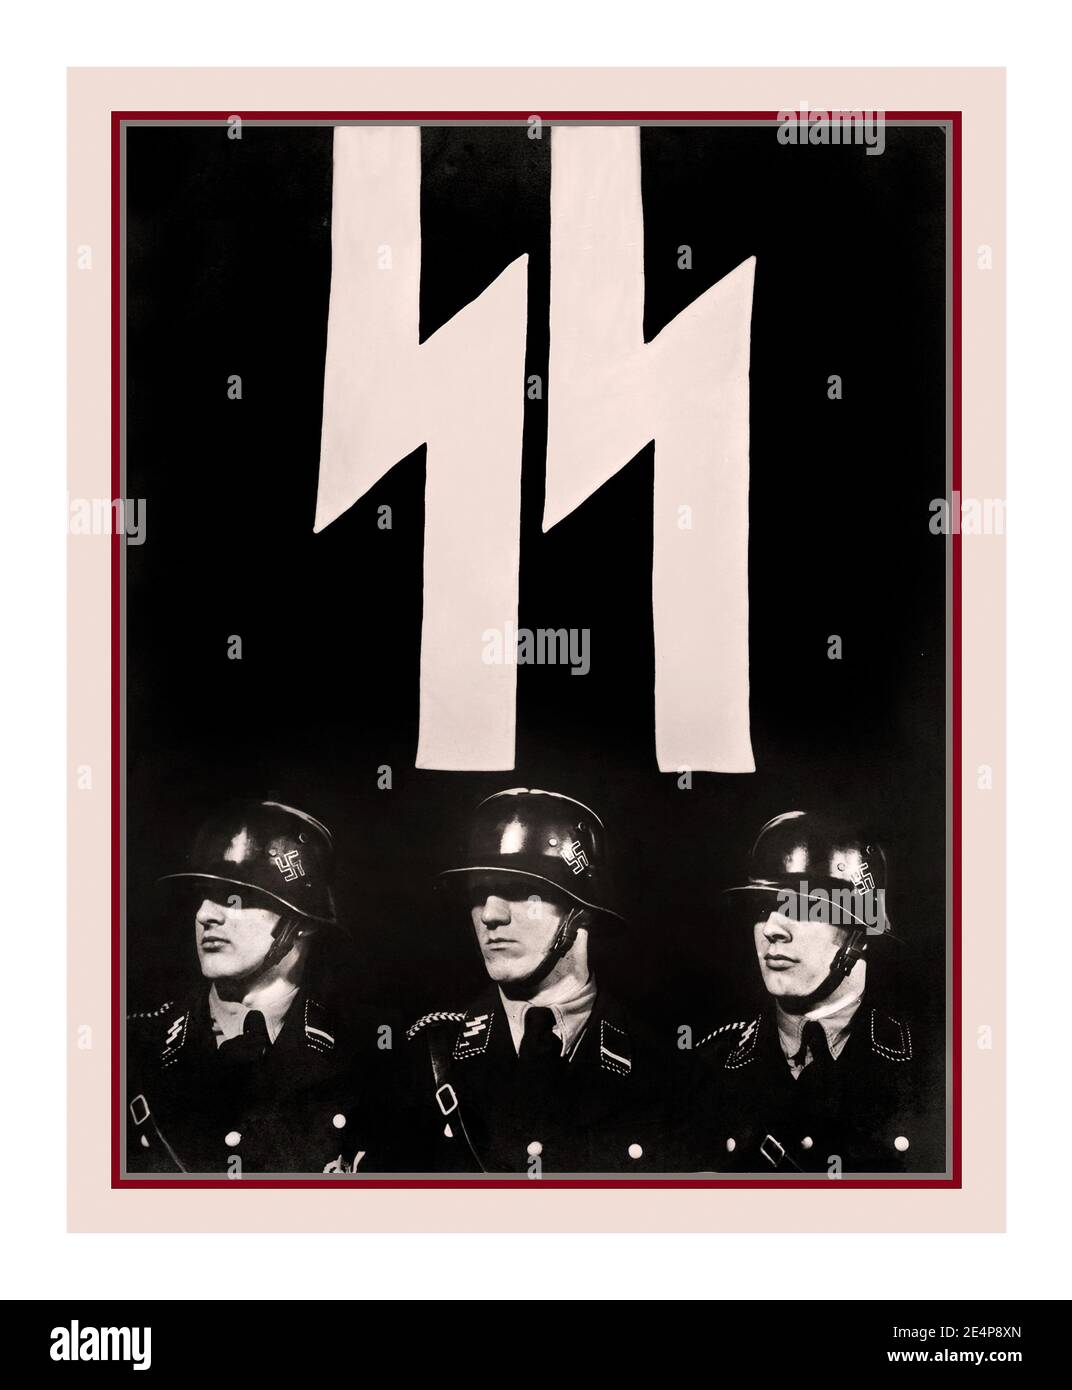 WAFFEN SS-Einsatzgruppen 1941 CARTELLINO PER IL RECLUTAMENTO DI PROPAGANDA NAZISTA "My Honour is called loyalty", "SS-Verfügungstruppe" Feldpostfotokarte "Meine Ehre heißt Treue", 1941, "SS-Einsatzstruppe" cartellone fotografico "My Honor is called loyalty", SS-Einsatzgruppen erano squadre paramilitari della morte della Germania nazista responsabili principalmente di uccisioni di massa, durante la seconda guerra mondiale (1939-45) nell'Europa occupata dalla Germania nazista. Foto Stock